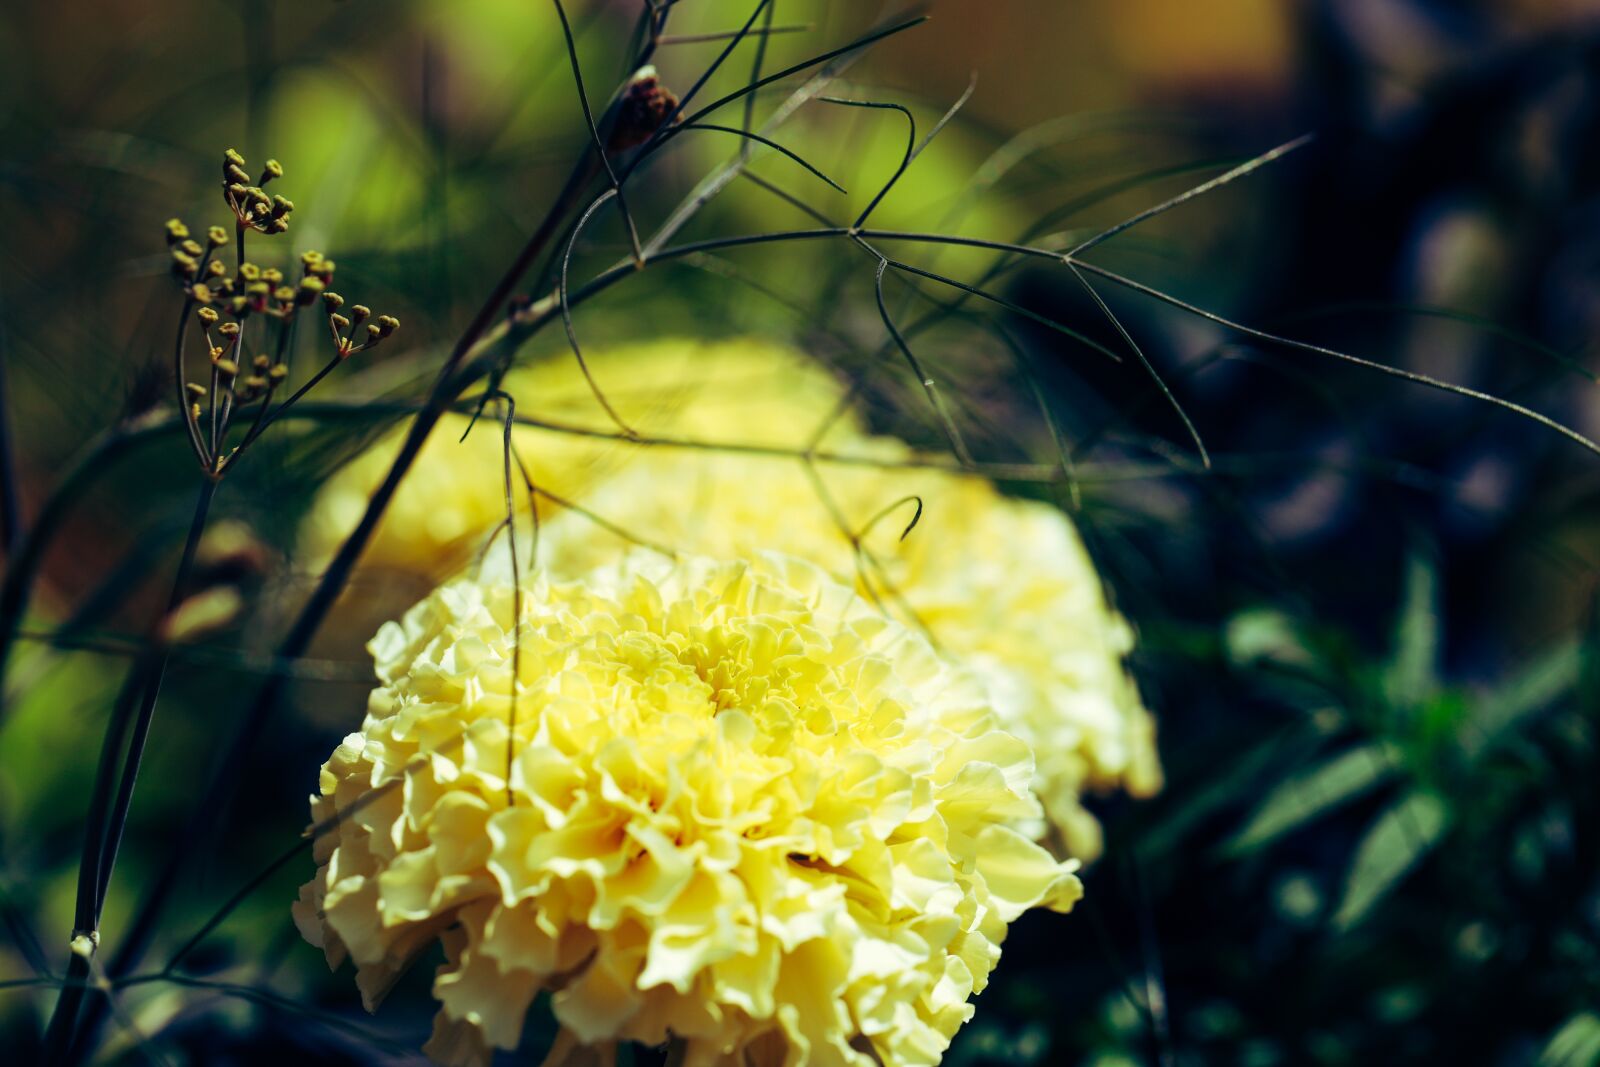 Canon EOS R sample photo. Flower, garden, yellow photography